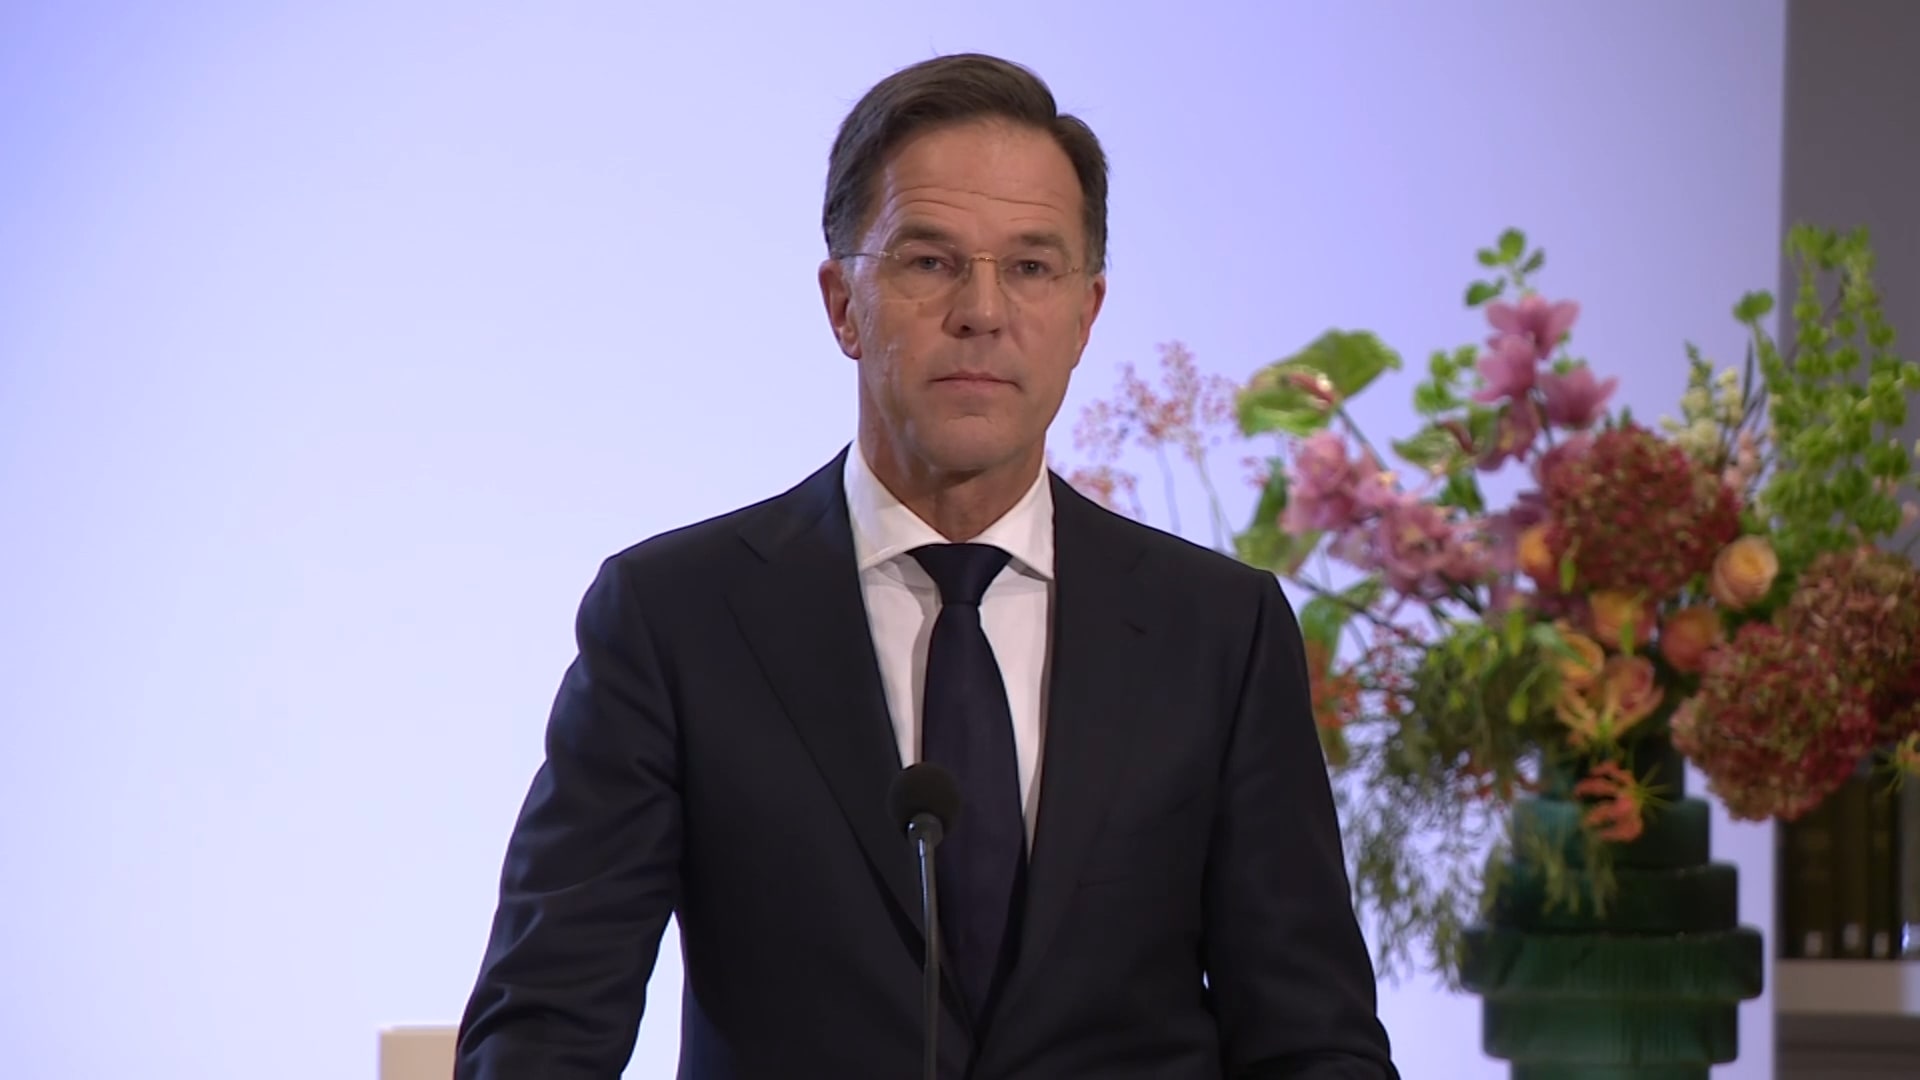 Premier Rutte biedt namens de regering excuses aan voor het slavernijverleden